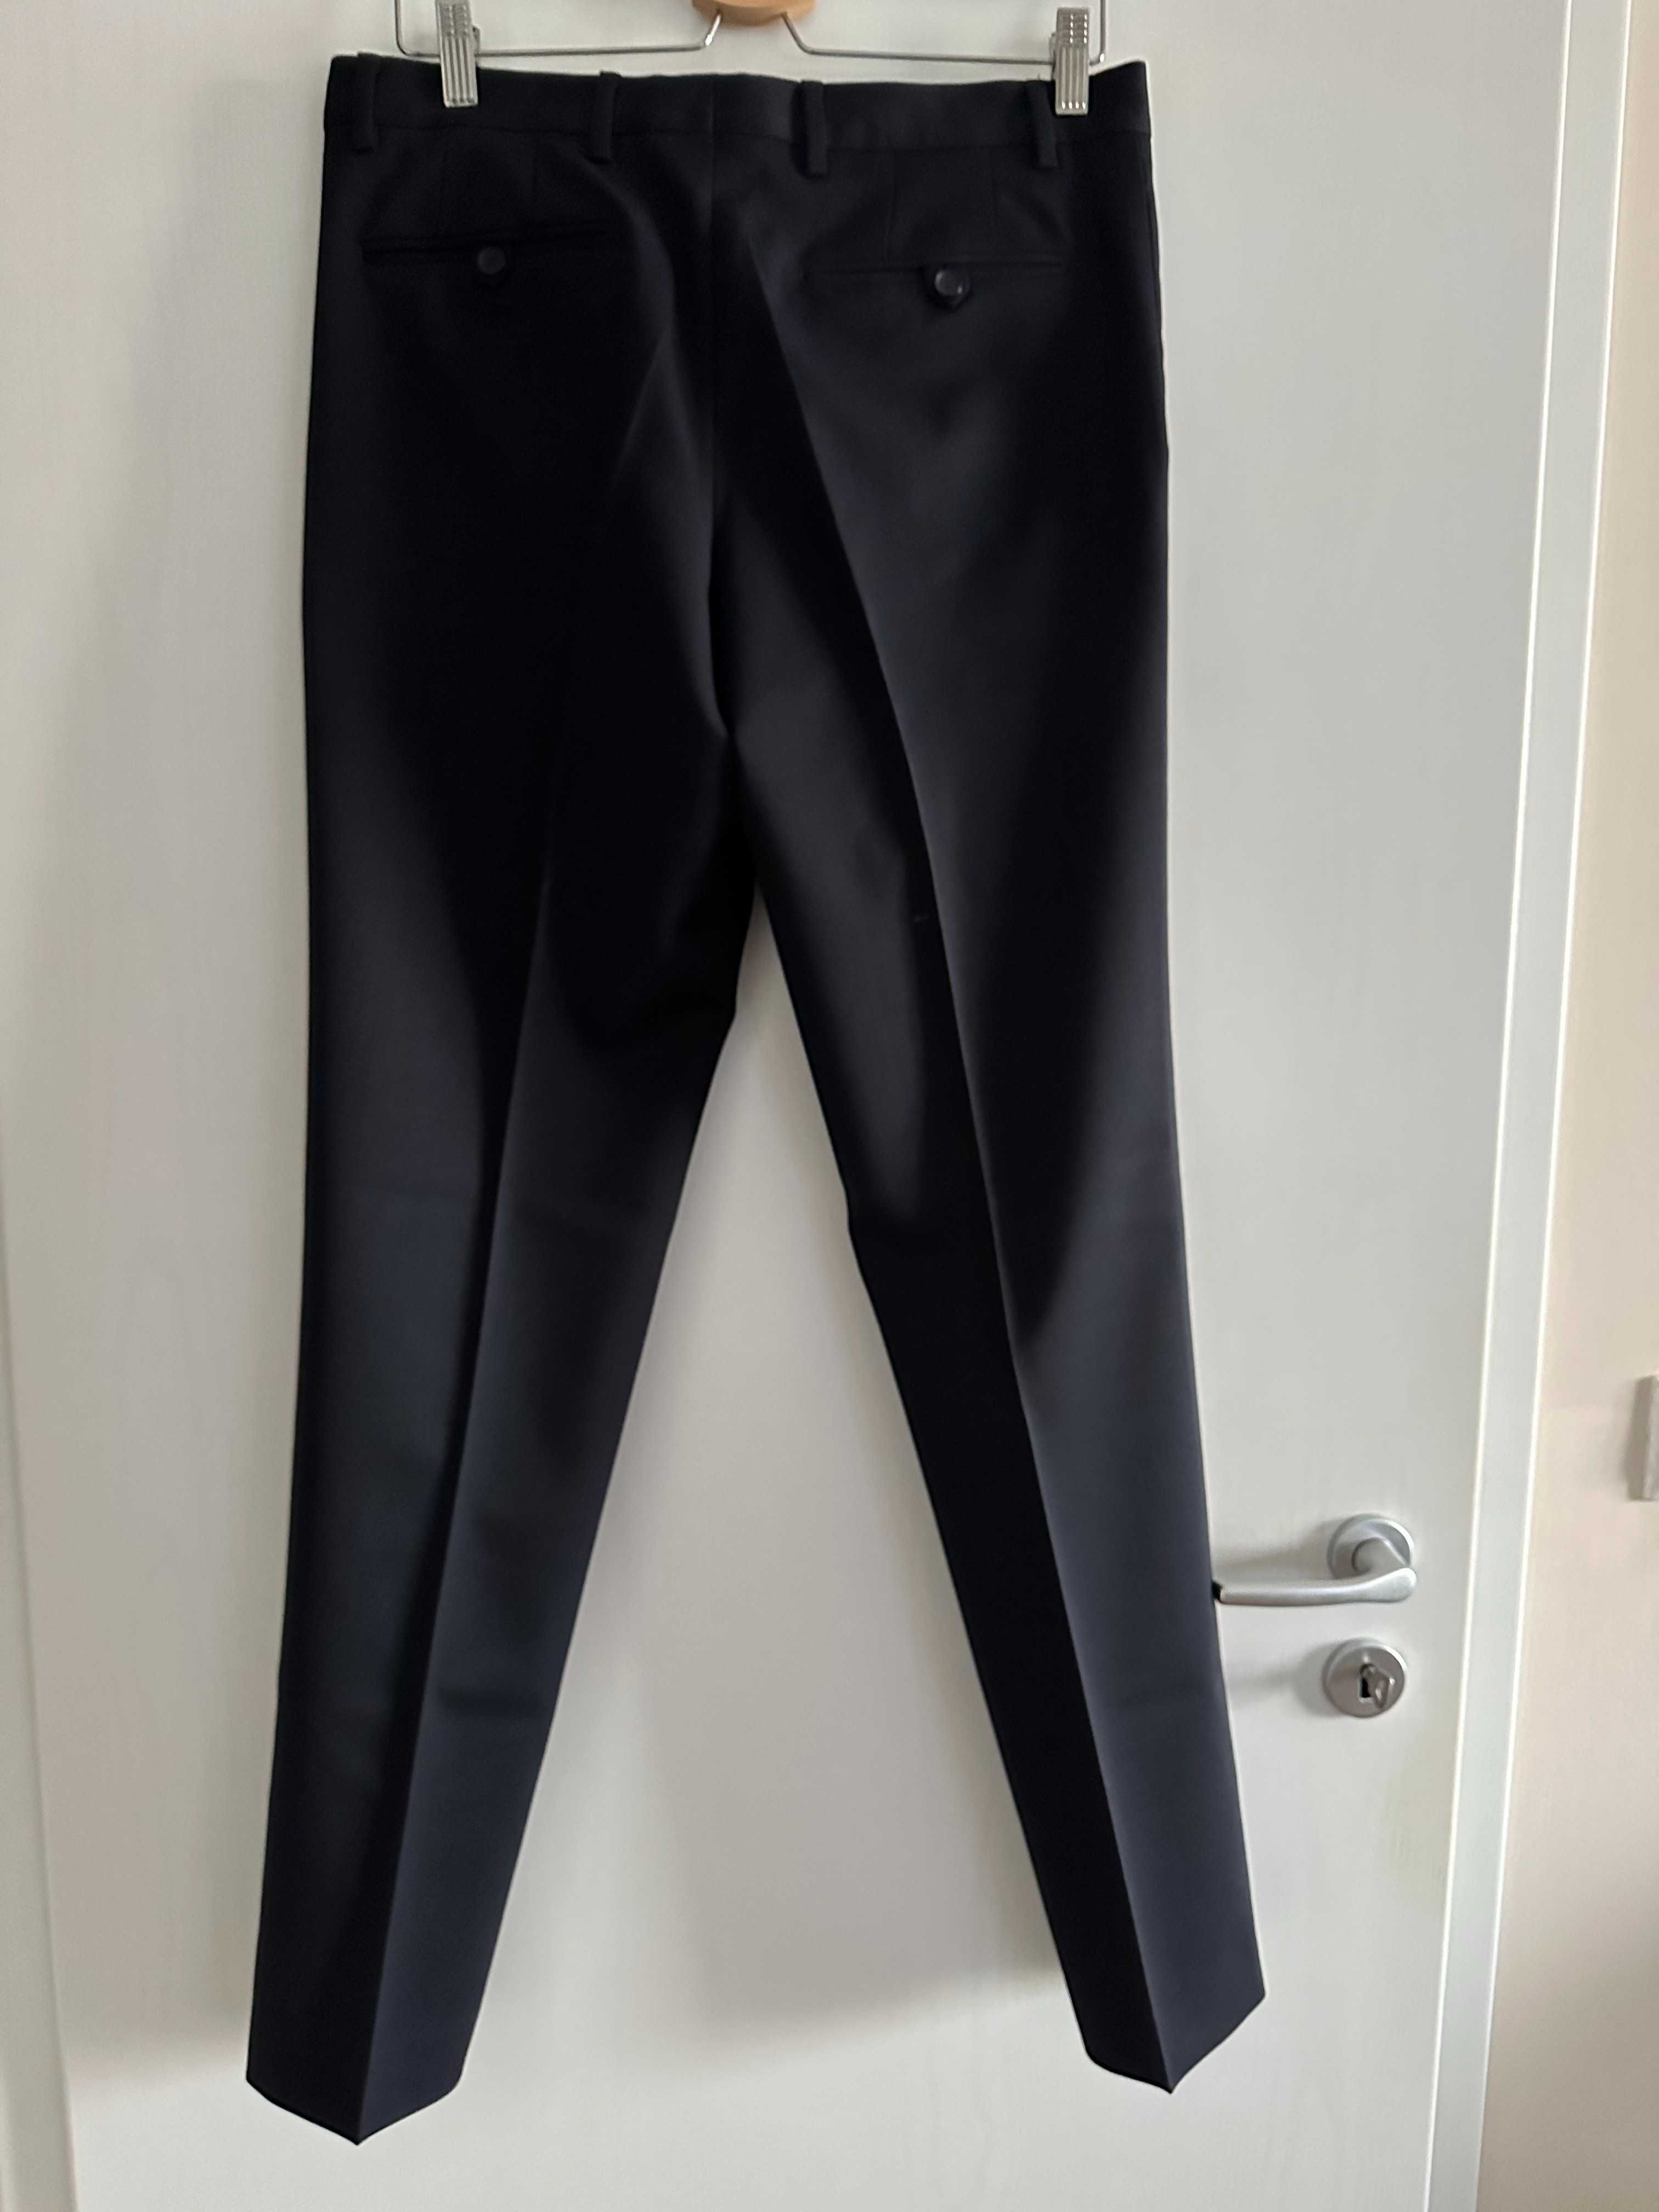 pantaloni Zara lana, EUR 40, USA/MEX 31